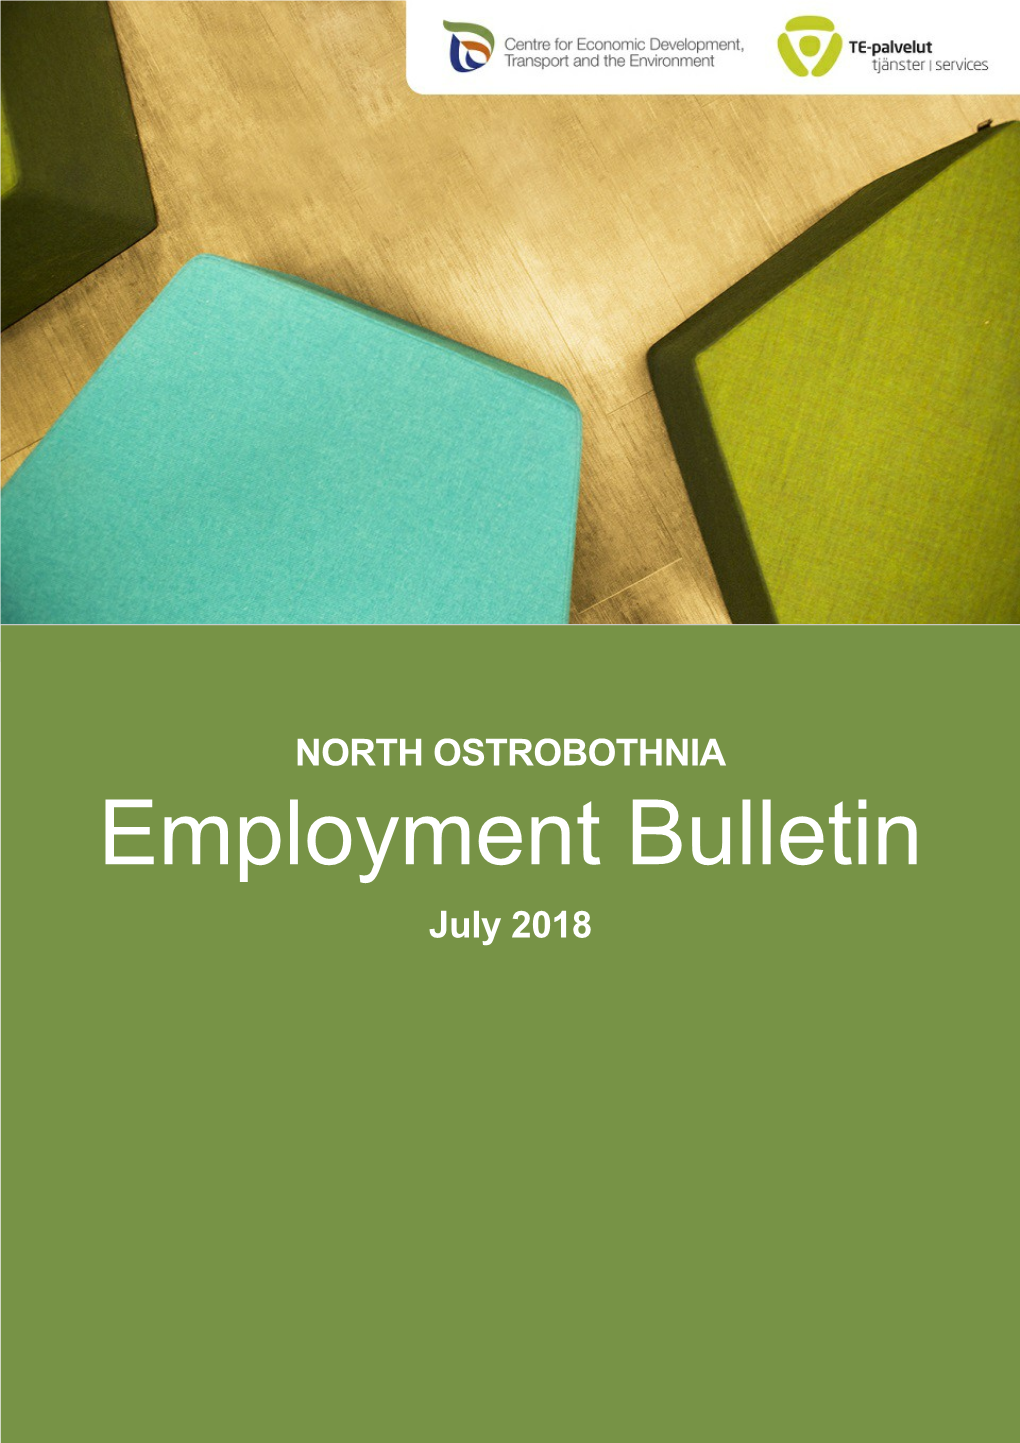 Employment Bulletin July 2018 NORTH OSTROBOTHNIA